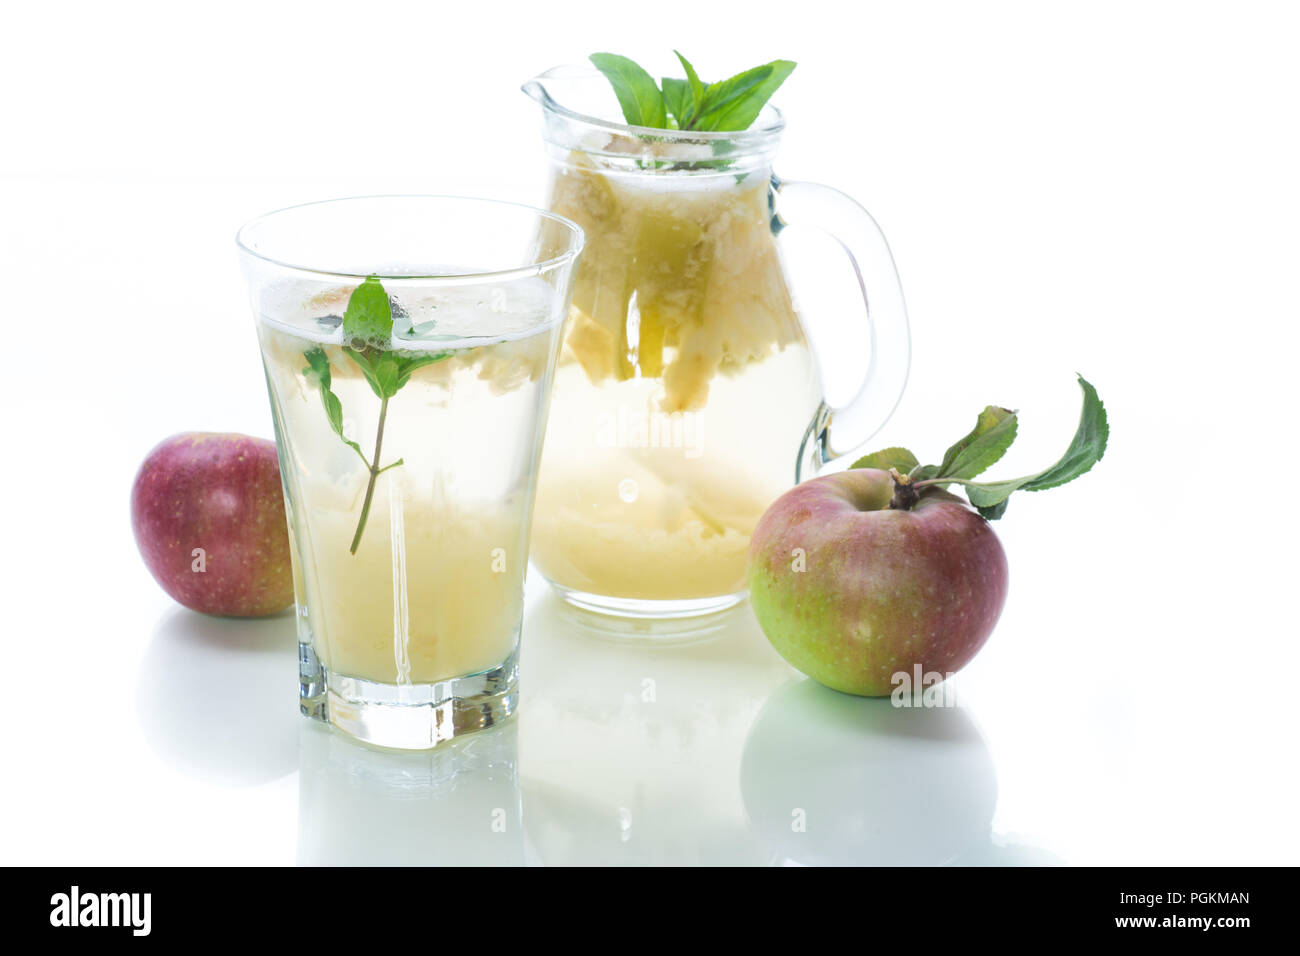 Verano frío dulce compota de manzanas frescas con una ramita de menta en un decantador de cristal Foto de stock